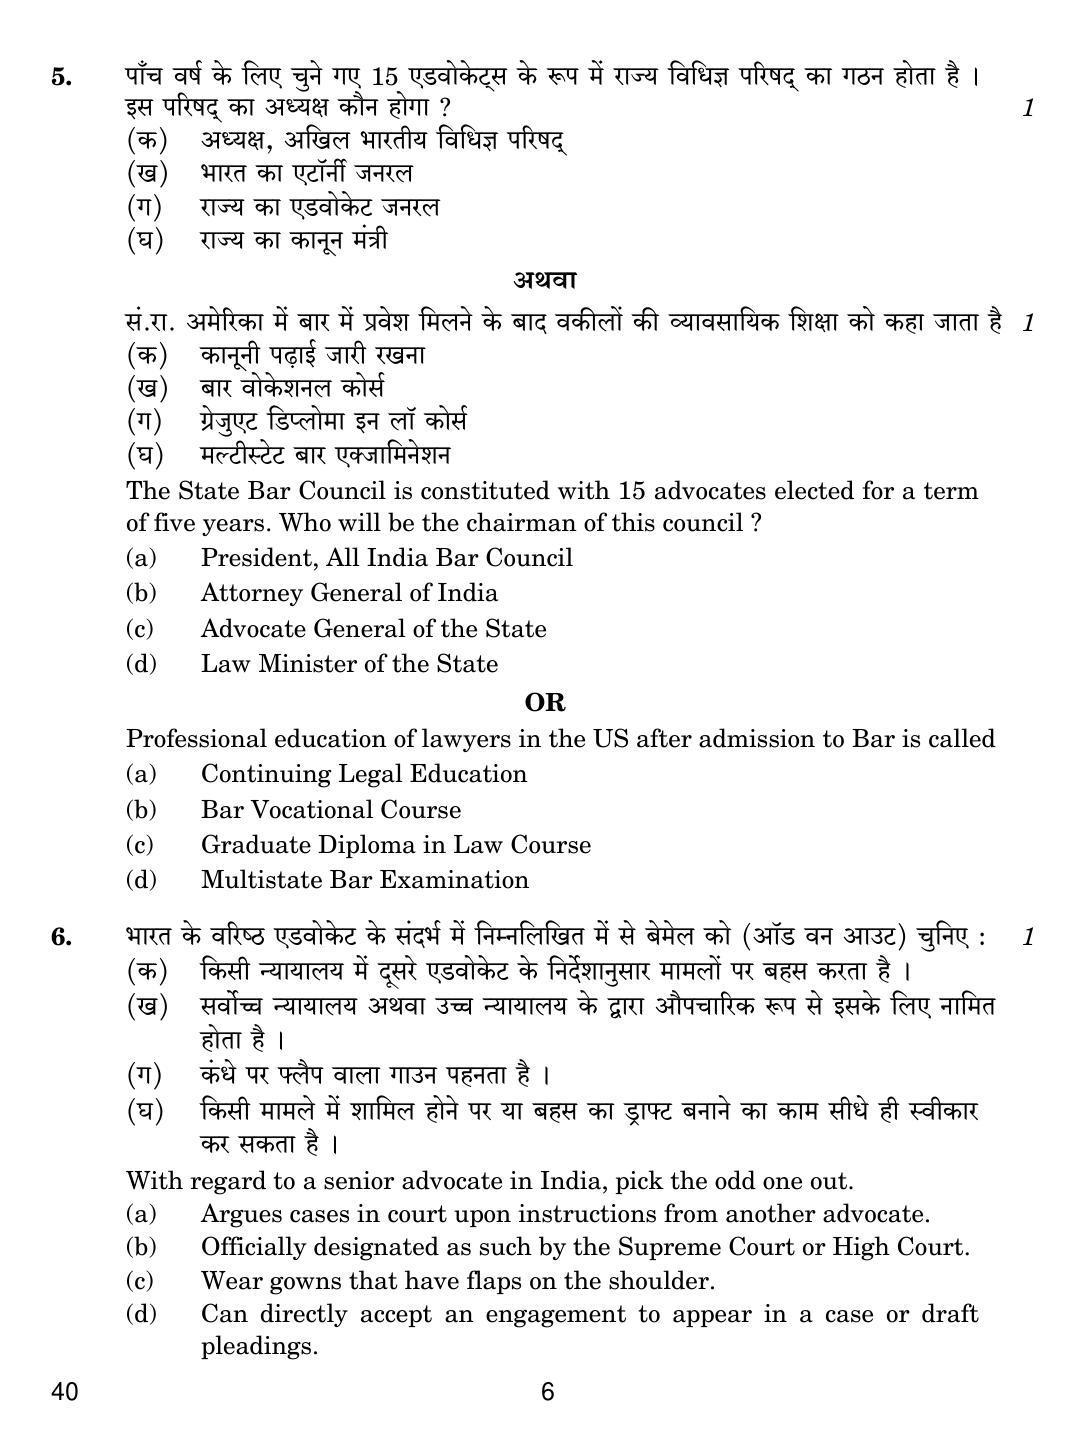 CBSE Class 12 40 Legal Studies 2019 Question Paper - Page 6